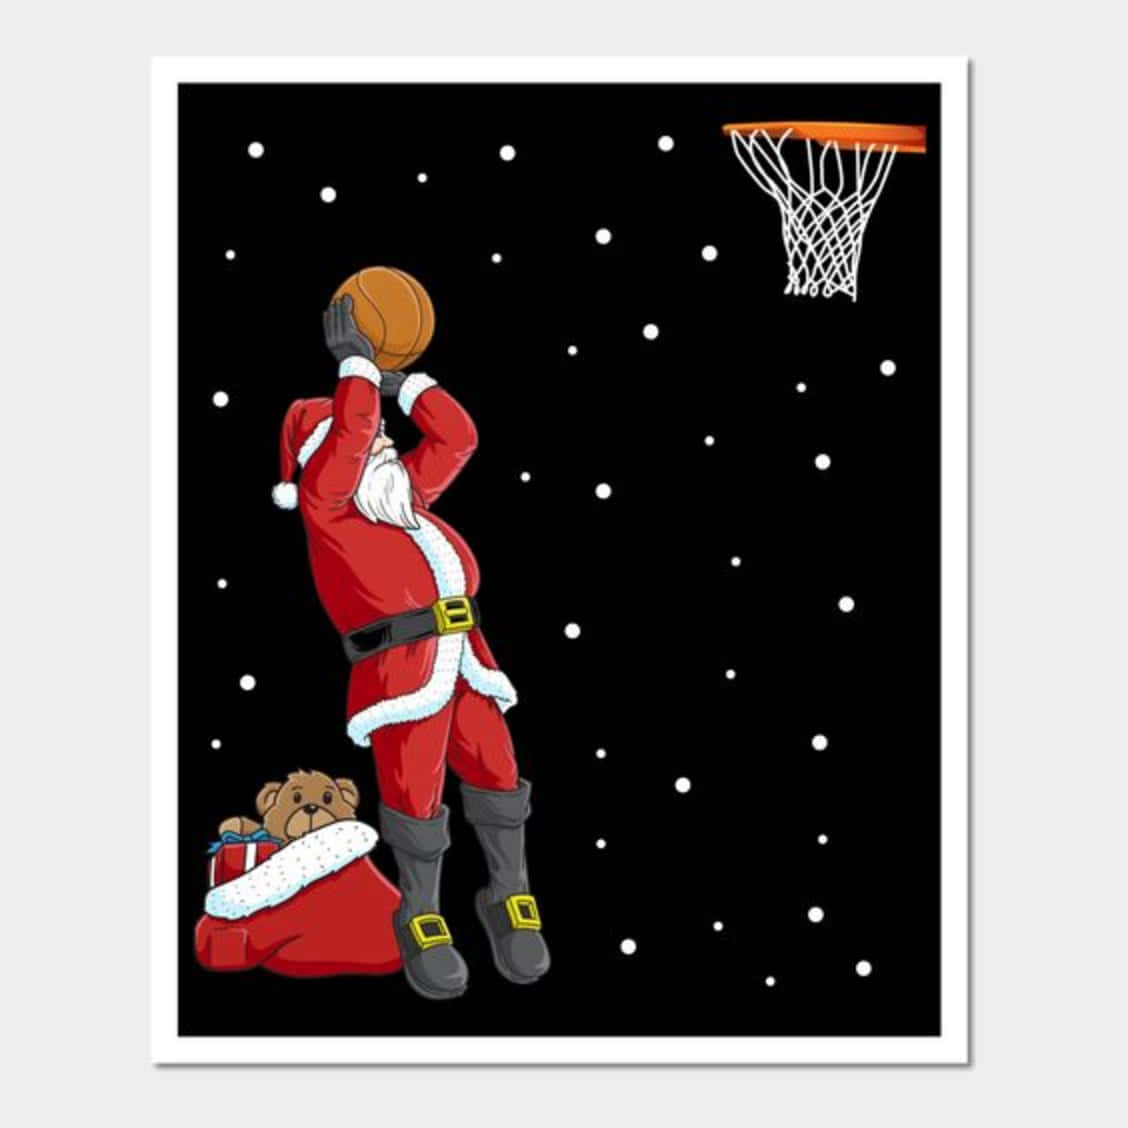 NBA fejrer julen i stil Wallpaper